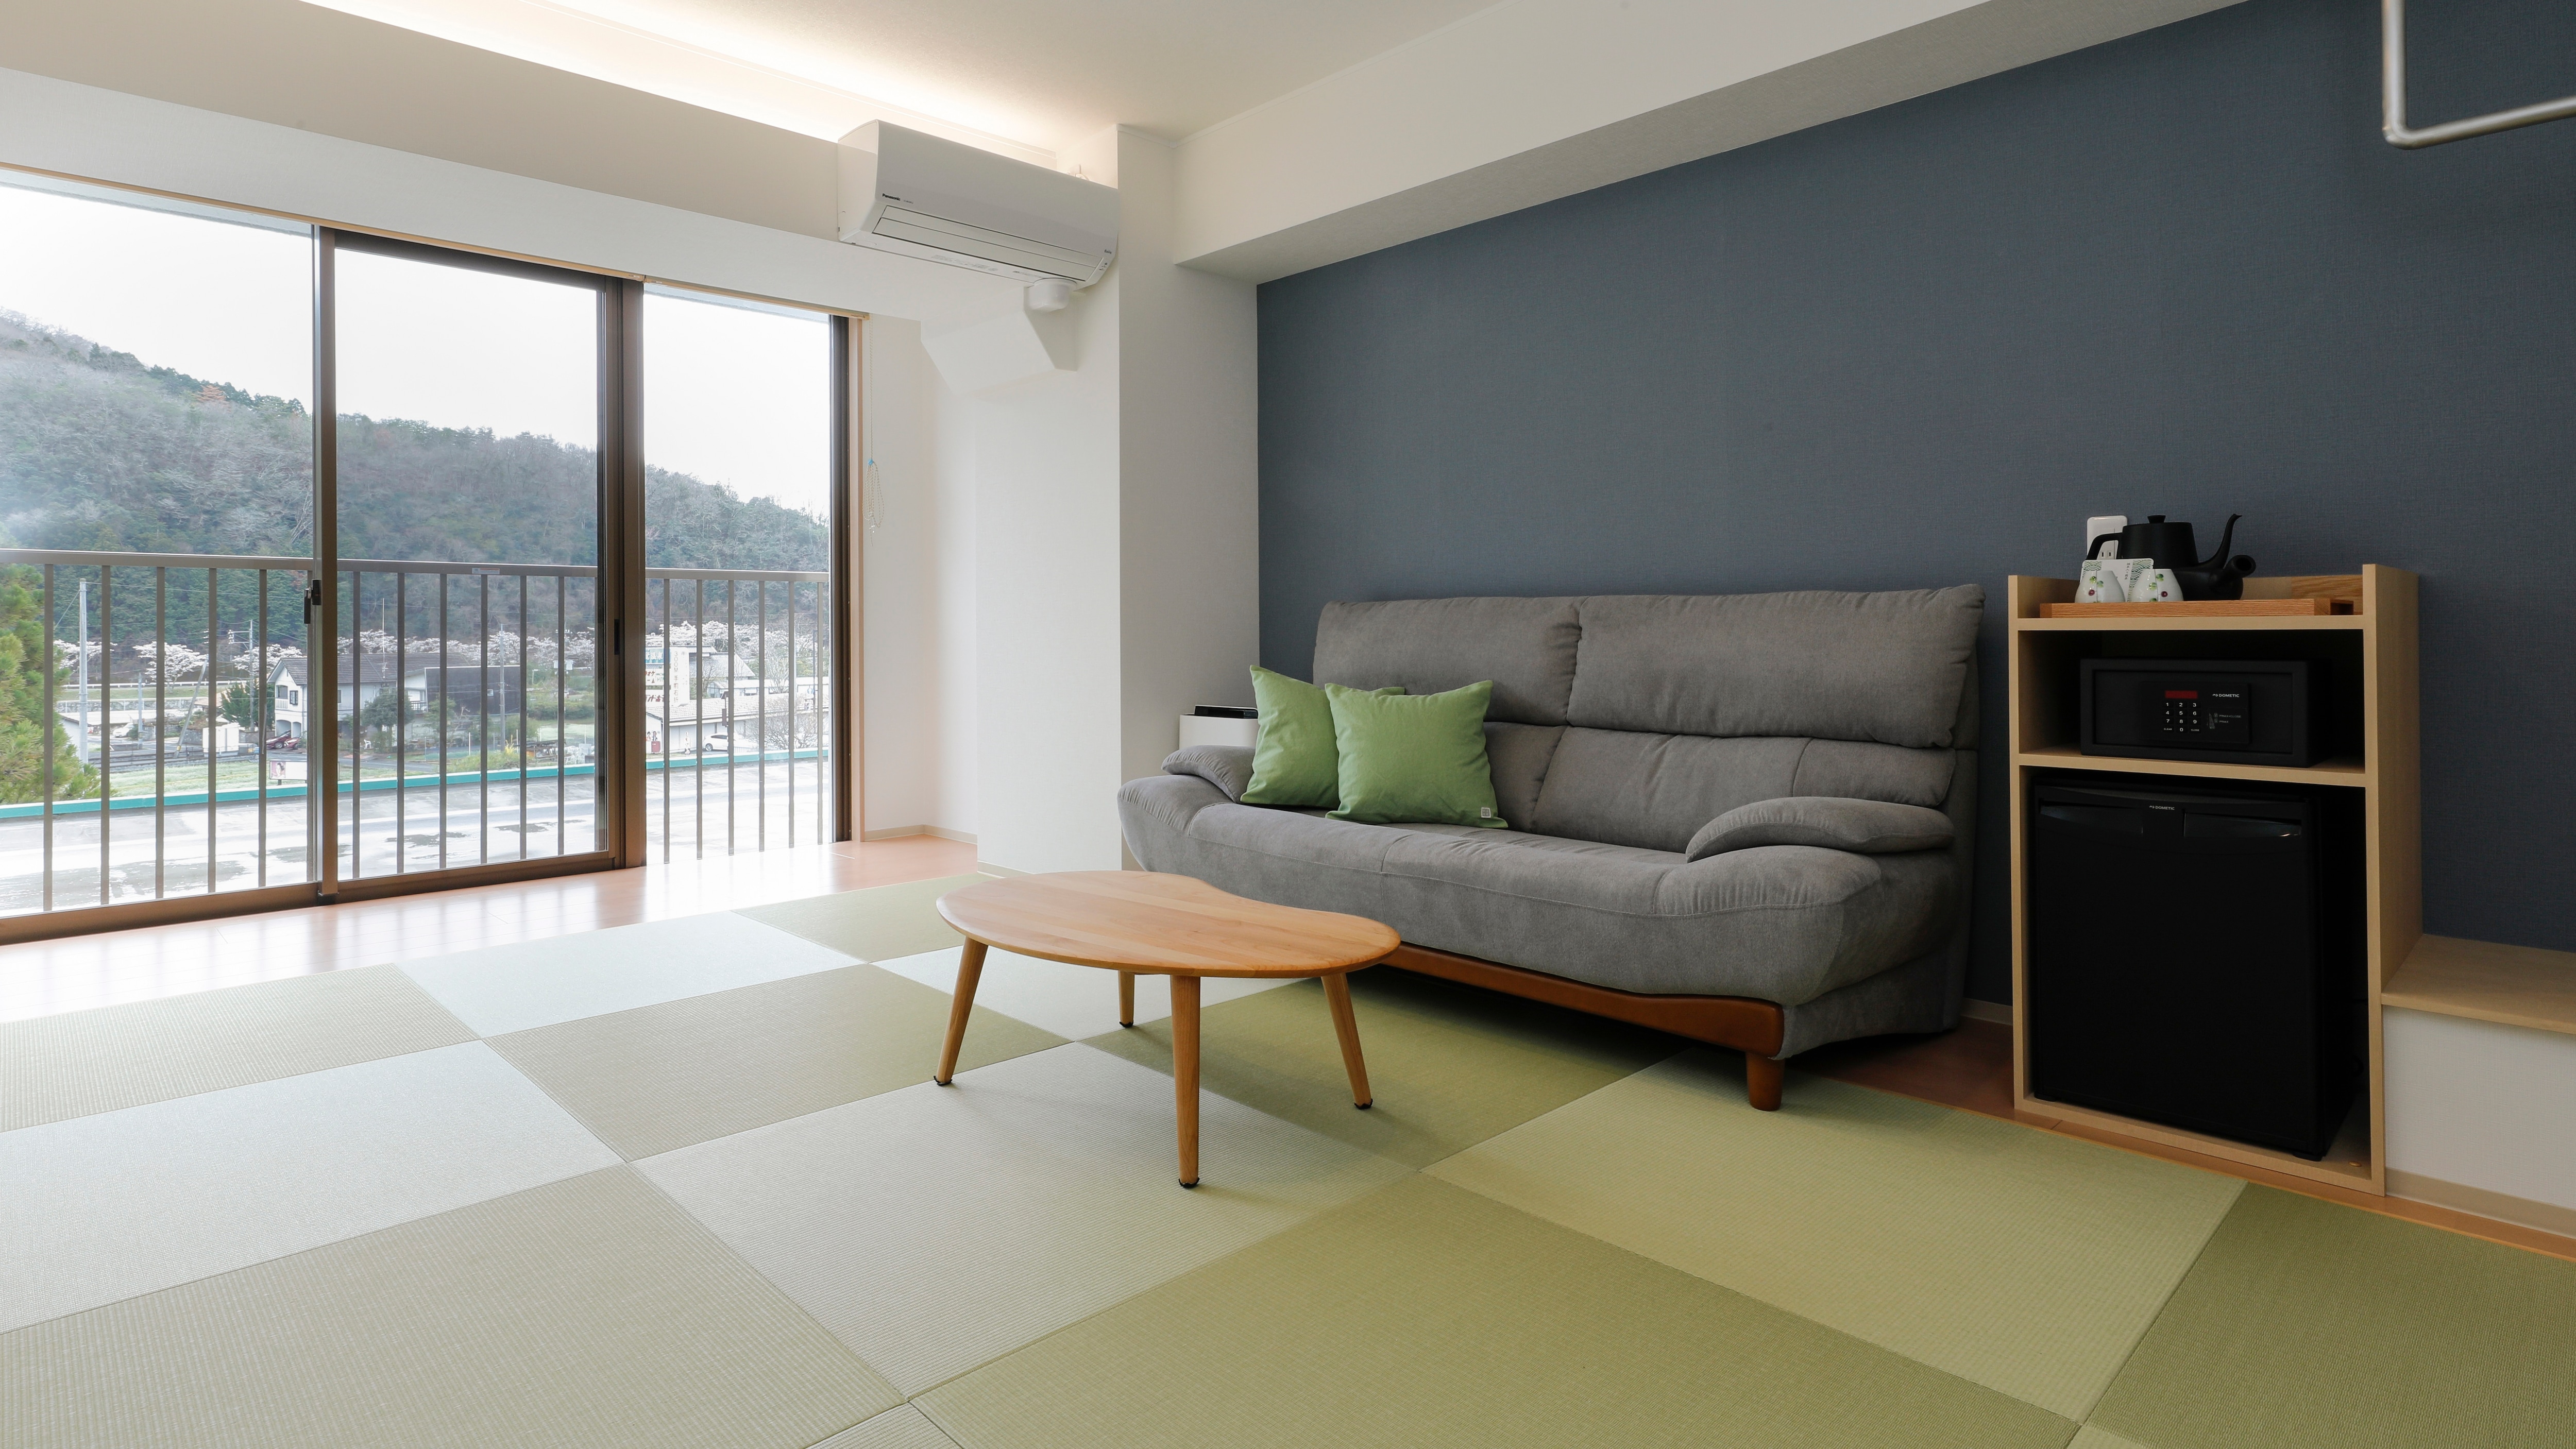 2022年4月开放的露天浴池客房【夏至】带宽敞沙发的客厅